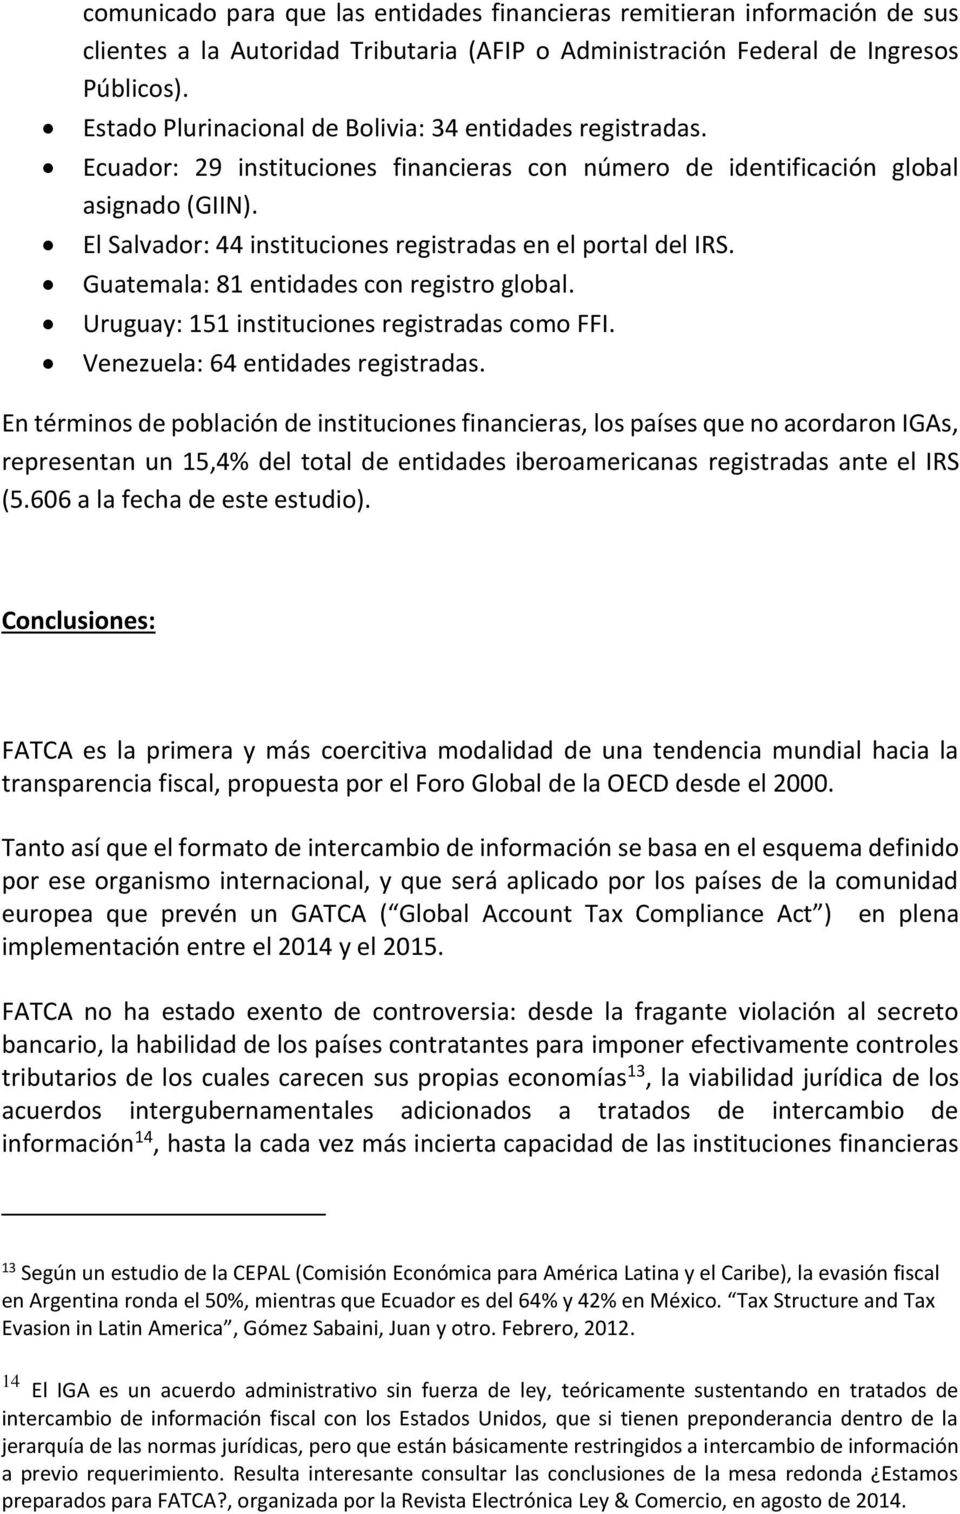 El Salvador: 44 instituciones registradas en el portal del IRS. Guatemala: 81 entidades con registro global. Uruguay: 151 instituciones registradas como FFI. Venezuela: 64 entidades registradas.